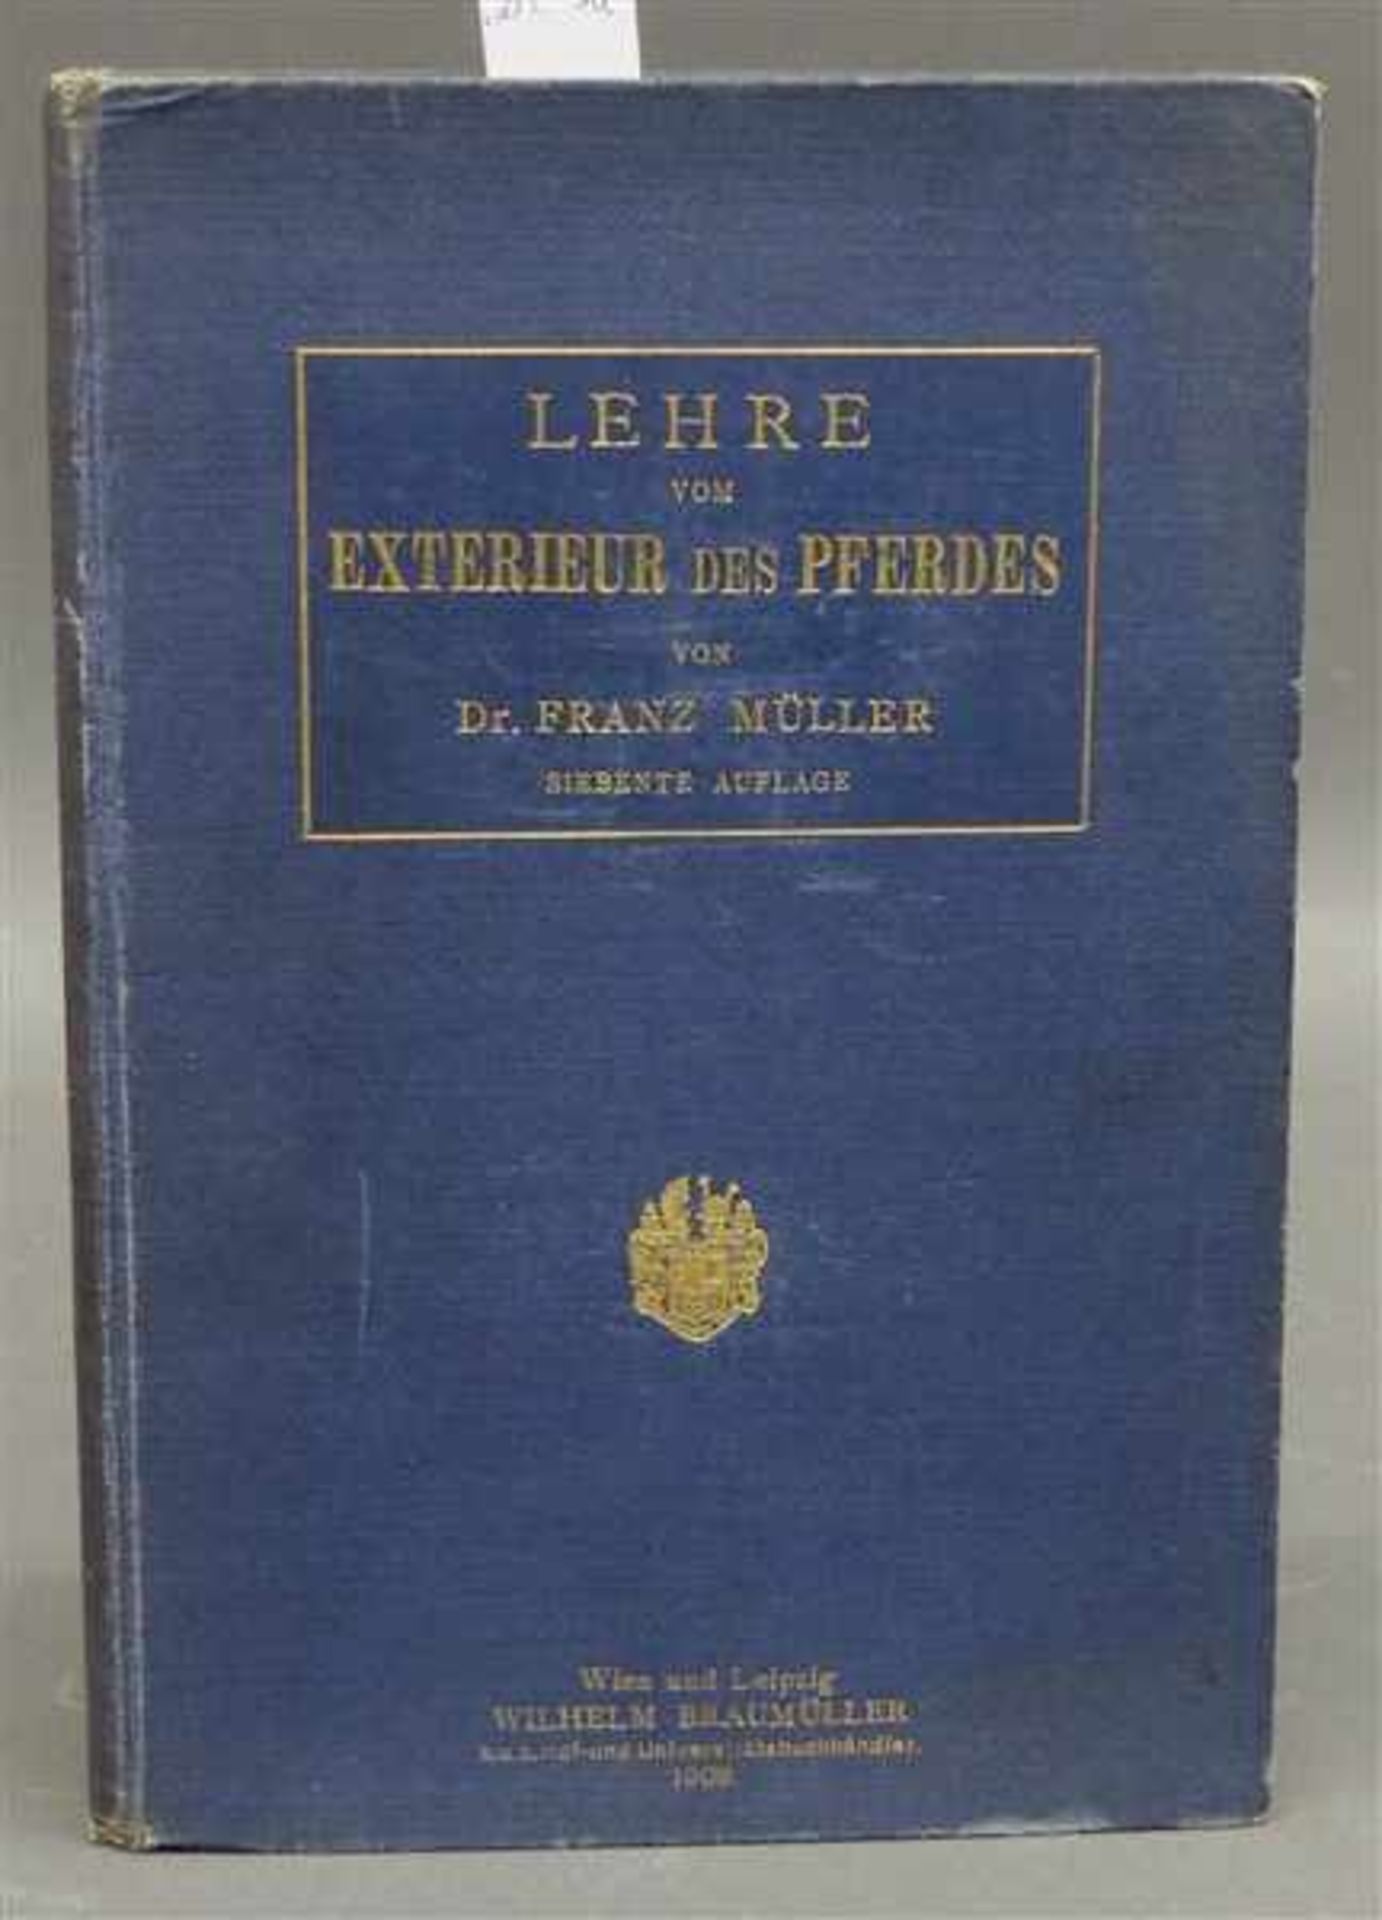 VollblutbuchLehre vom Exterieur des Pferdes, von Dr. Franz Müller, Wien und Leipzig, 1908,